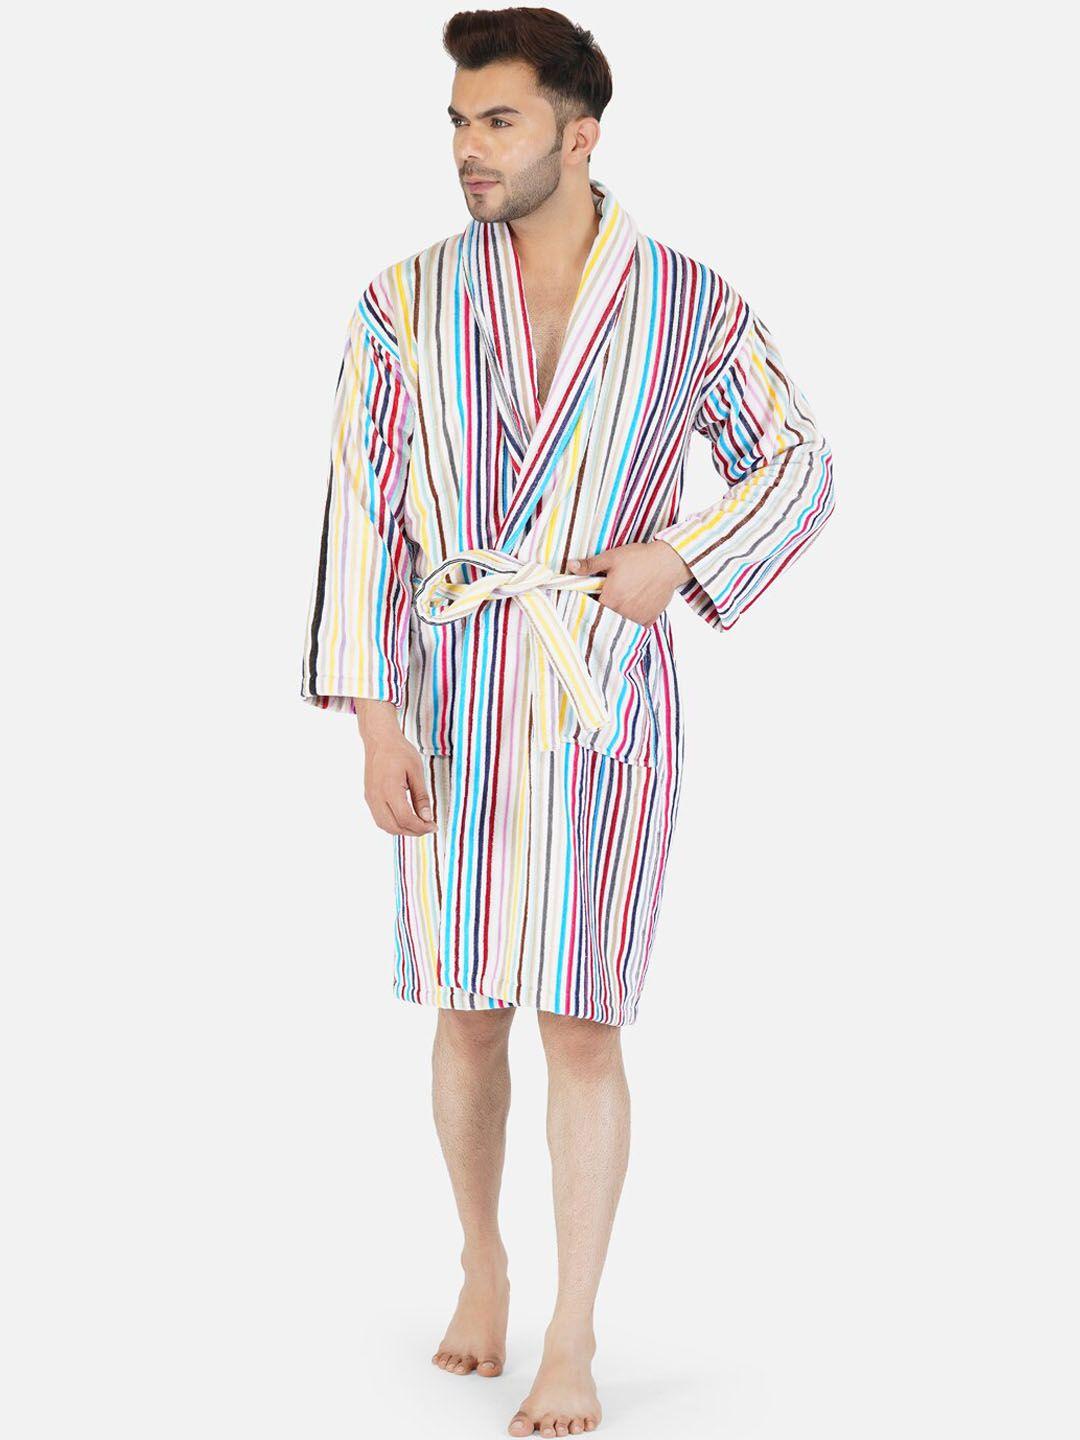 rangoli-men-multicoloured-striped-400-gsm-pure-bath-robe-with-slippers